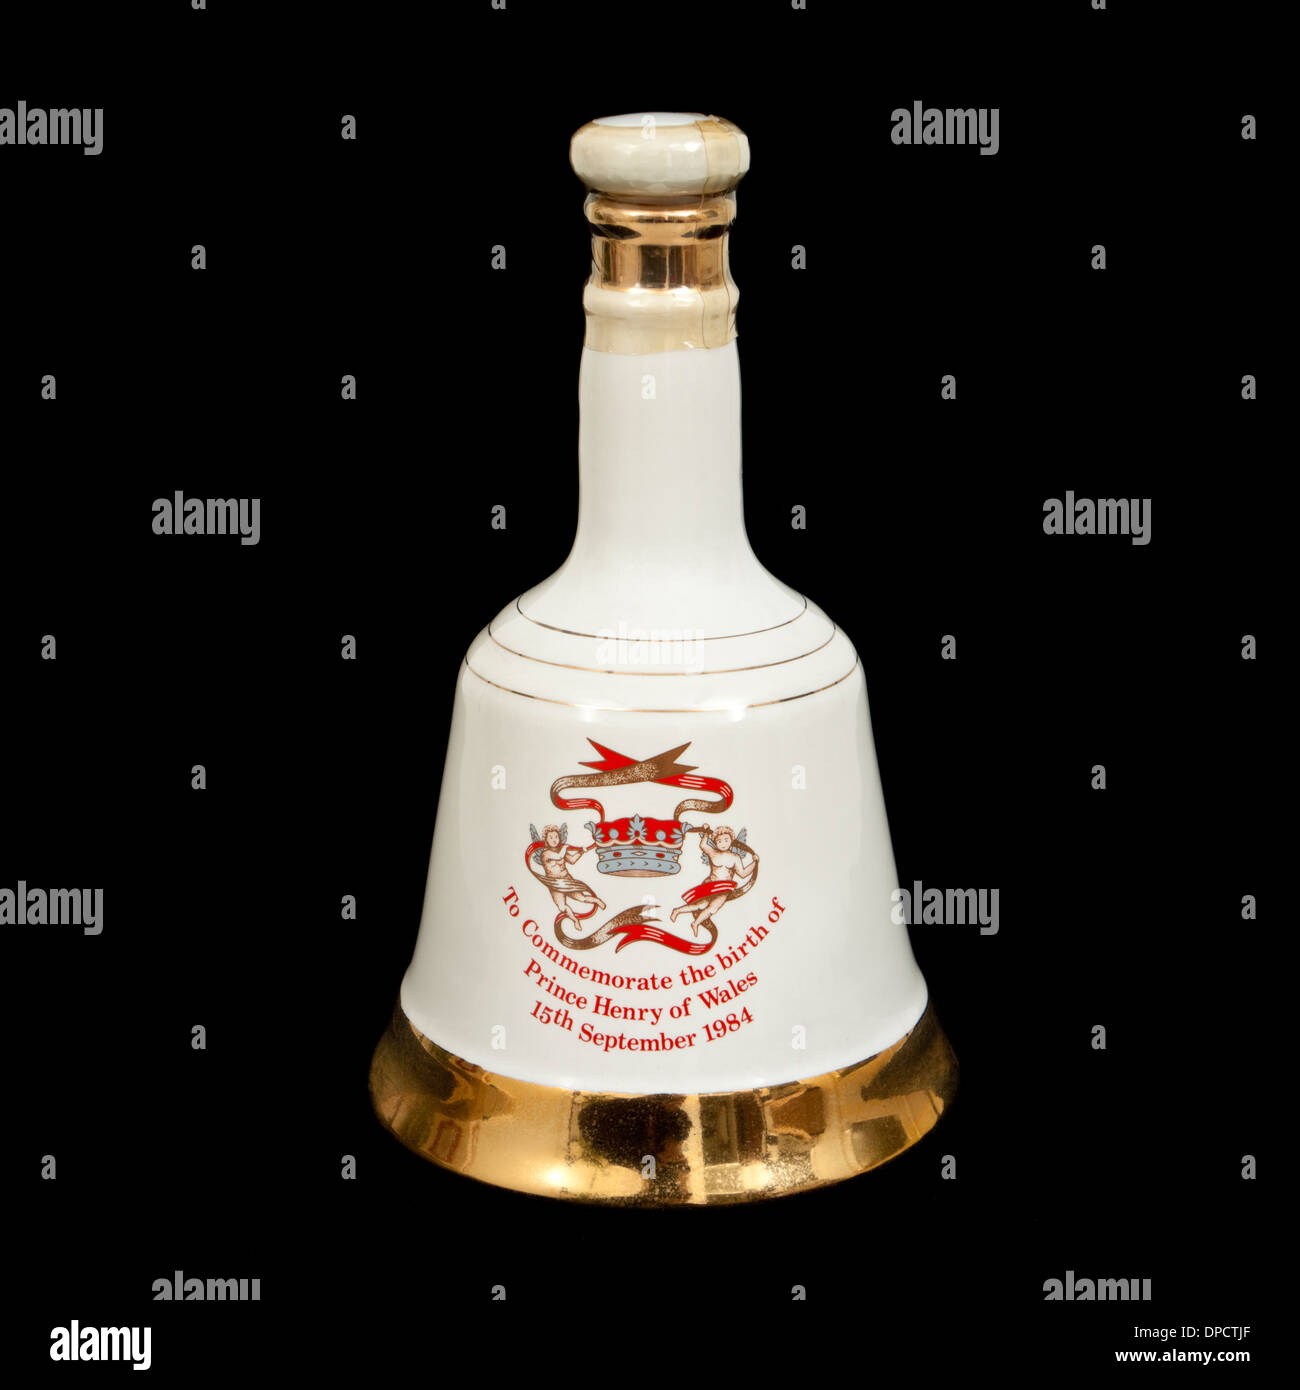 Bells Scotch Whisky Porzellan Royal Dekanter von Wade, zum Gedenken an die Geburt von Prinz Henry (Harry) auf 15.09.1984 gemacht Stockfoto